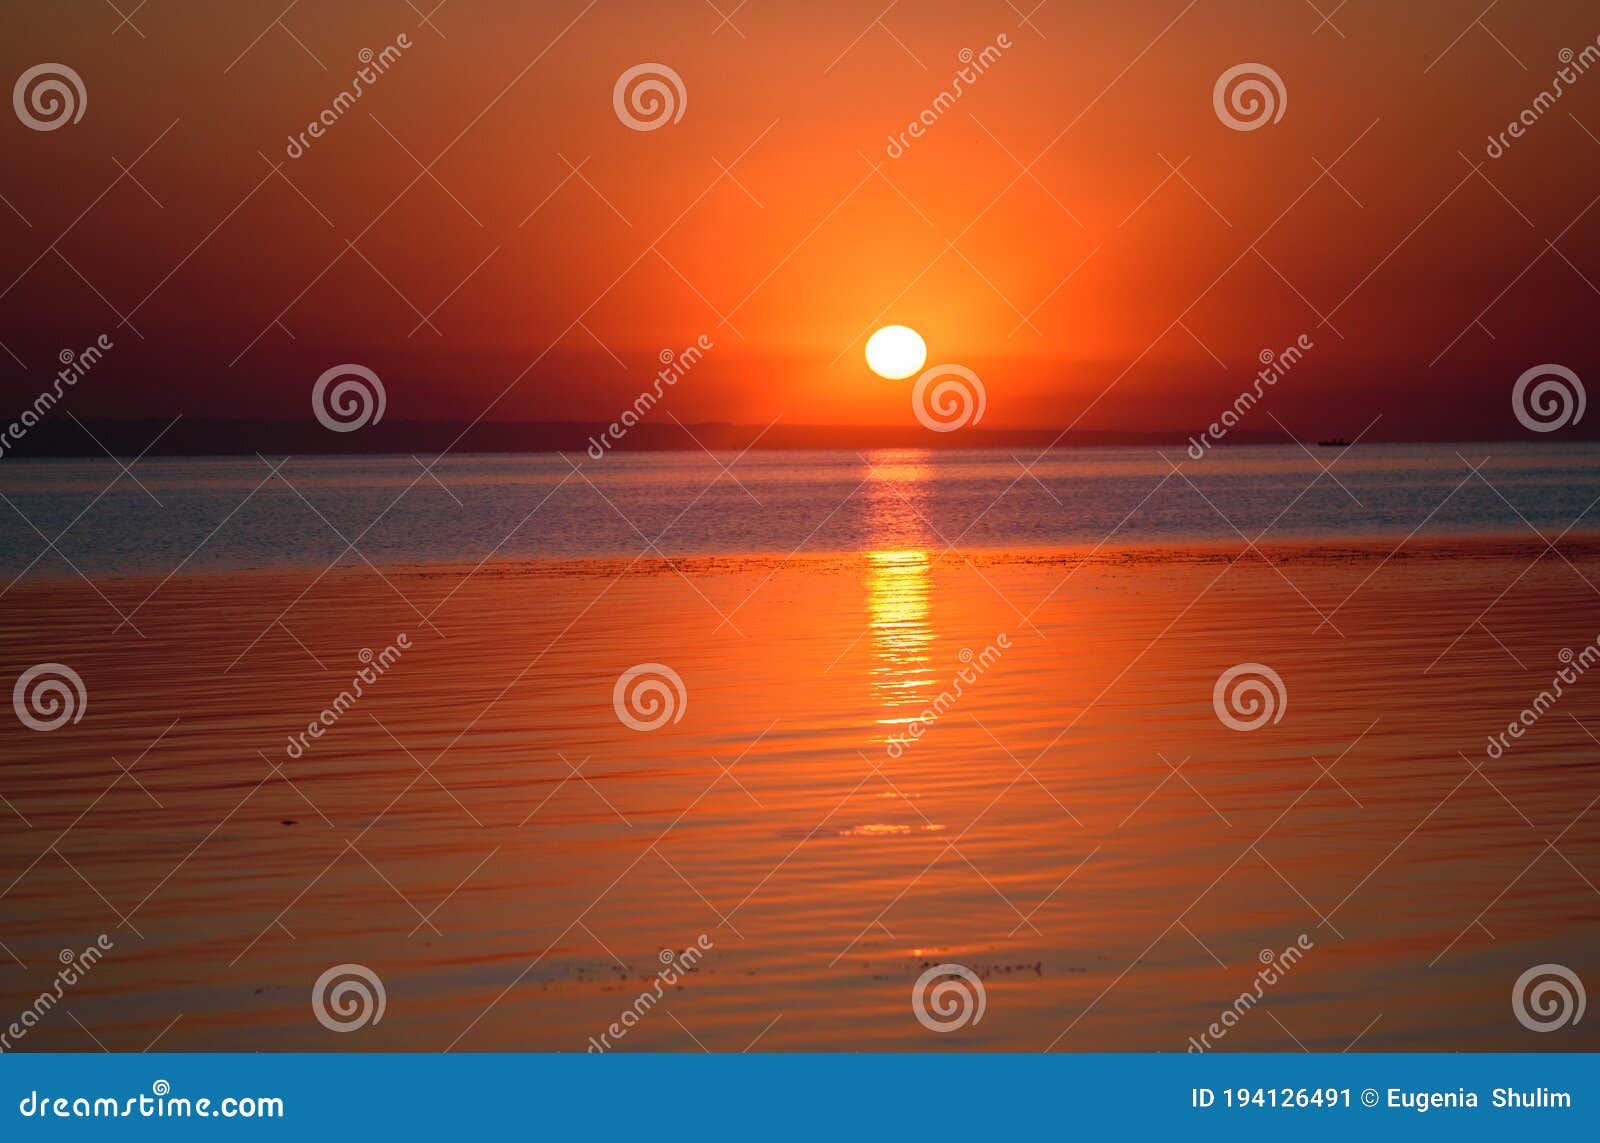 Beautiful Sunrise on the Beach. Good Morning Stock Image - Image ...